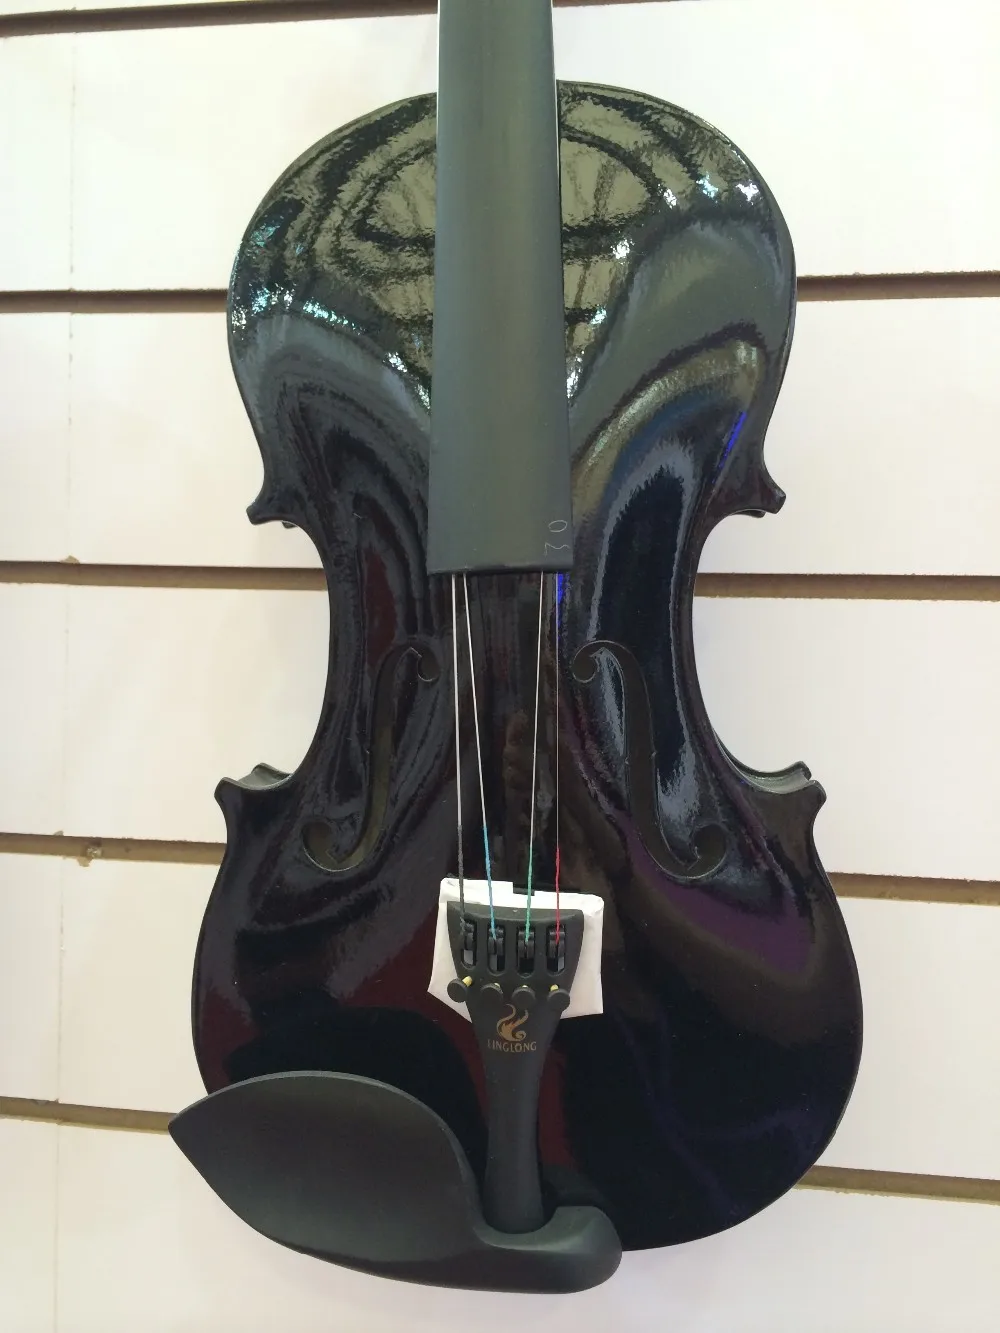 Tl Vp色 ピンク楽器バイオリンフリーケース付き Buy 音楽バイオリン ピンクバイオリン ピンクバイオリン Product On Alibaba Com